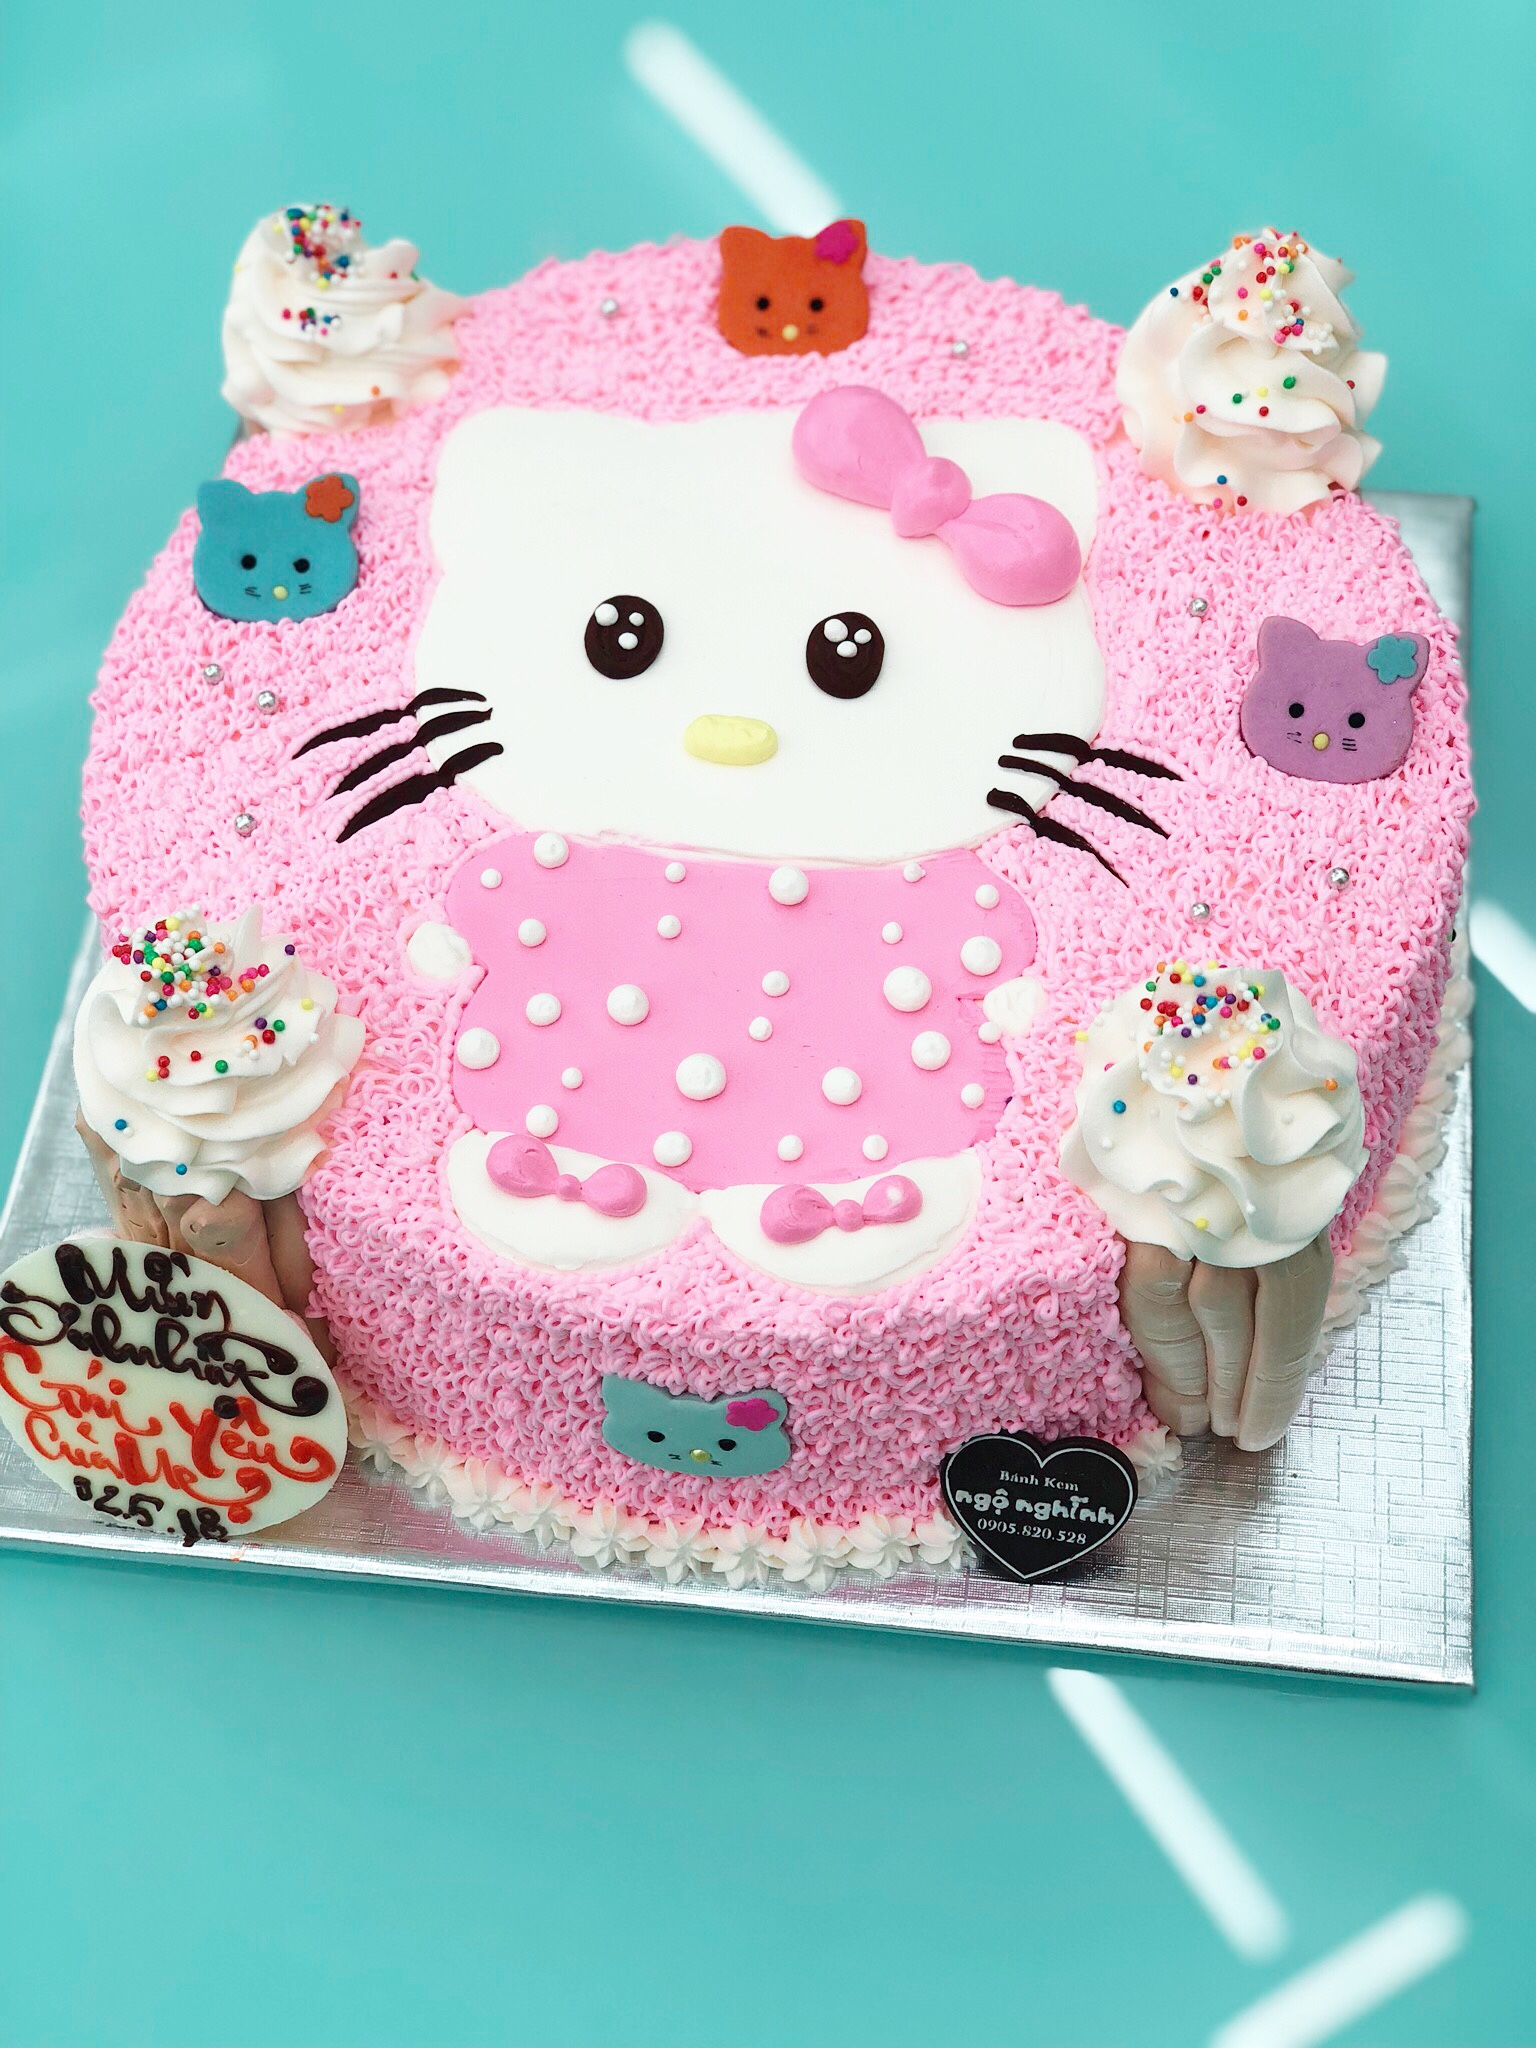 Với những người yêu thích những chiếc tai thỏ xinh xắn và màu hồng nhẹ nhàng, chắc hẳn không thể bỏ qua chú mèo Hello Kitty. Hãy cùng đón xem hình ảnh của Hello Kitty để lại cho bạn những cảm xúc tươi vui và cũng đừng quên chia sẻ về chiếc tai thỏ đáng yêu này với bạn bè nhé!